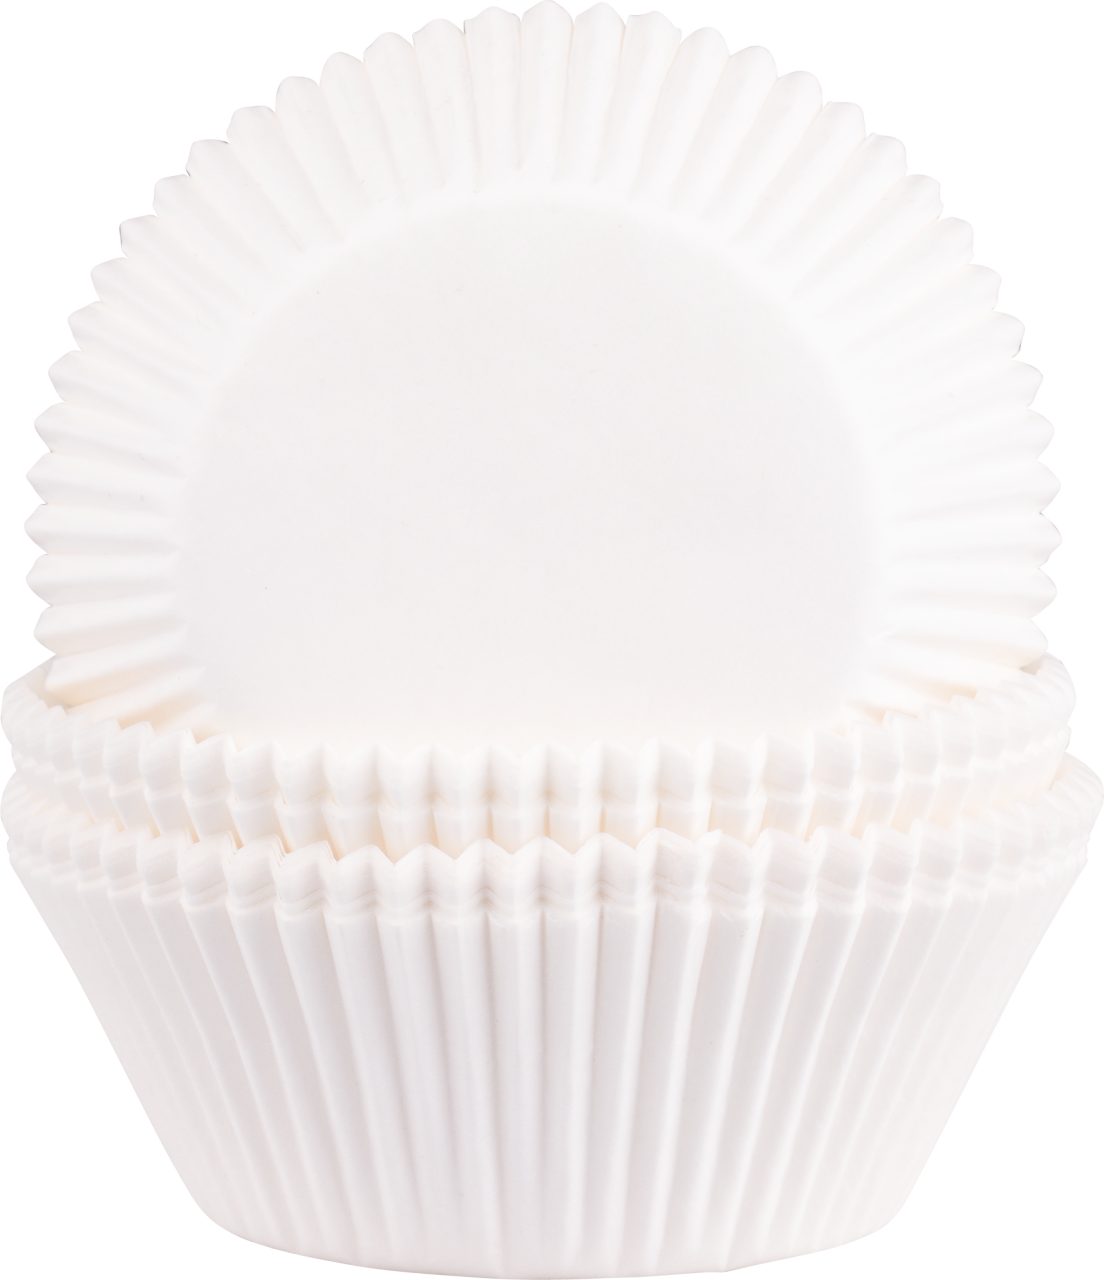 Demmler Muffinform 5012121024, Backförmchen Weiß, 100 Muffinformen aus Pergamentersatz - Made in Germany | Muffinformen